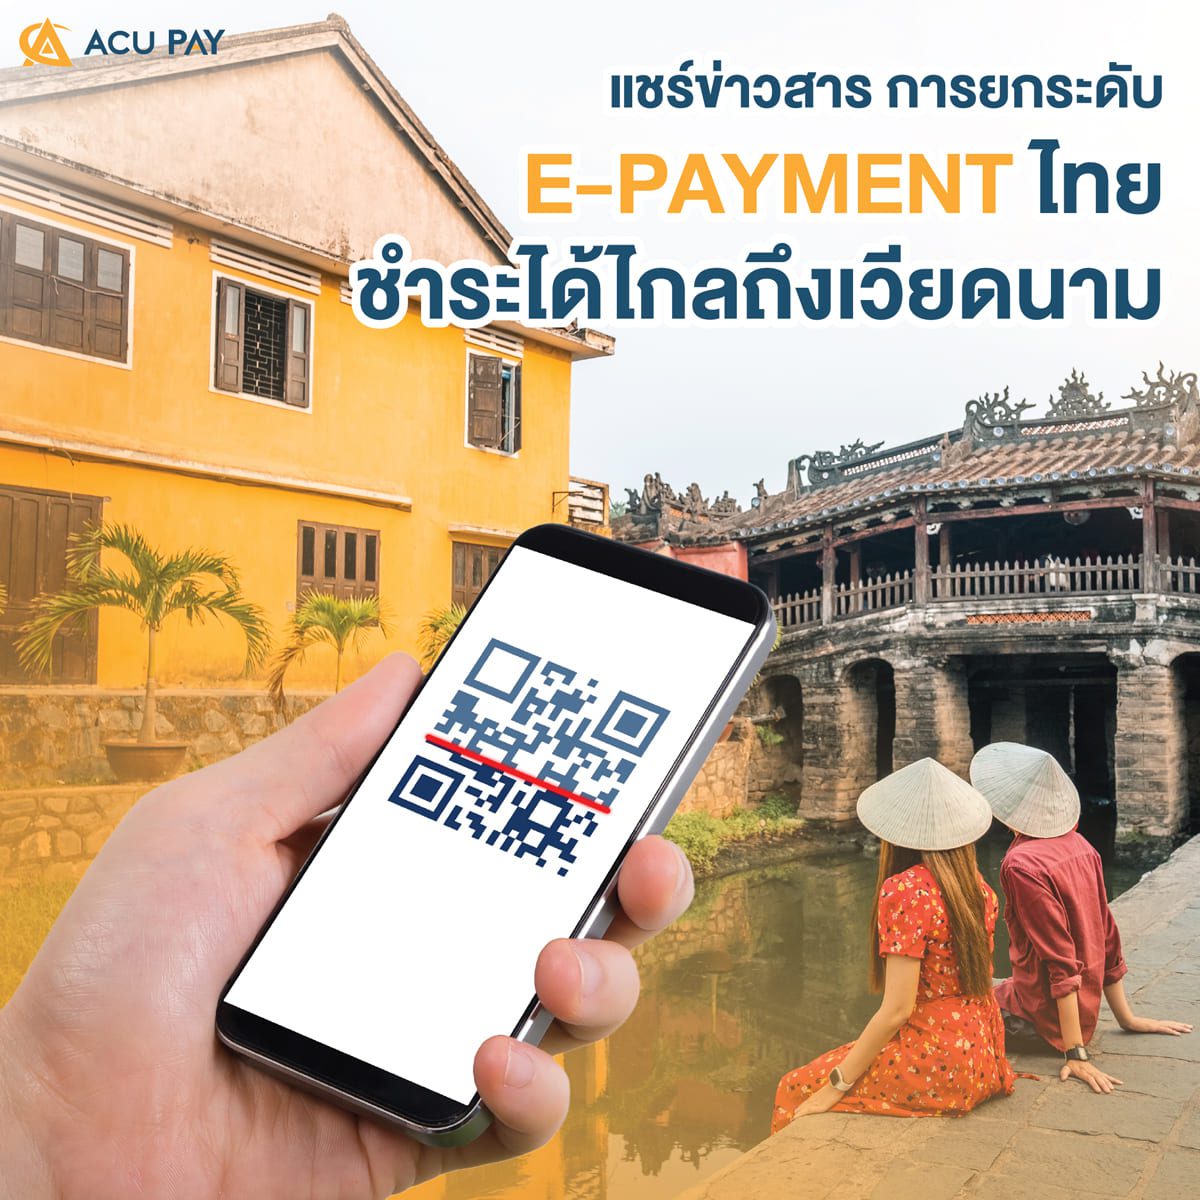 ยกระดับ e-Payment ไทย ชำระได้ไกลถึงเวียดนาม​